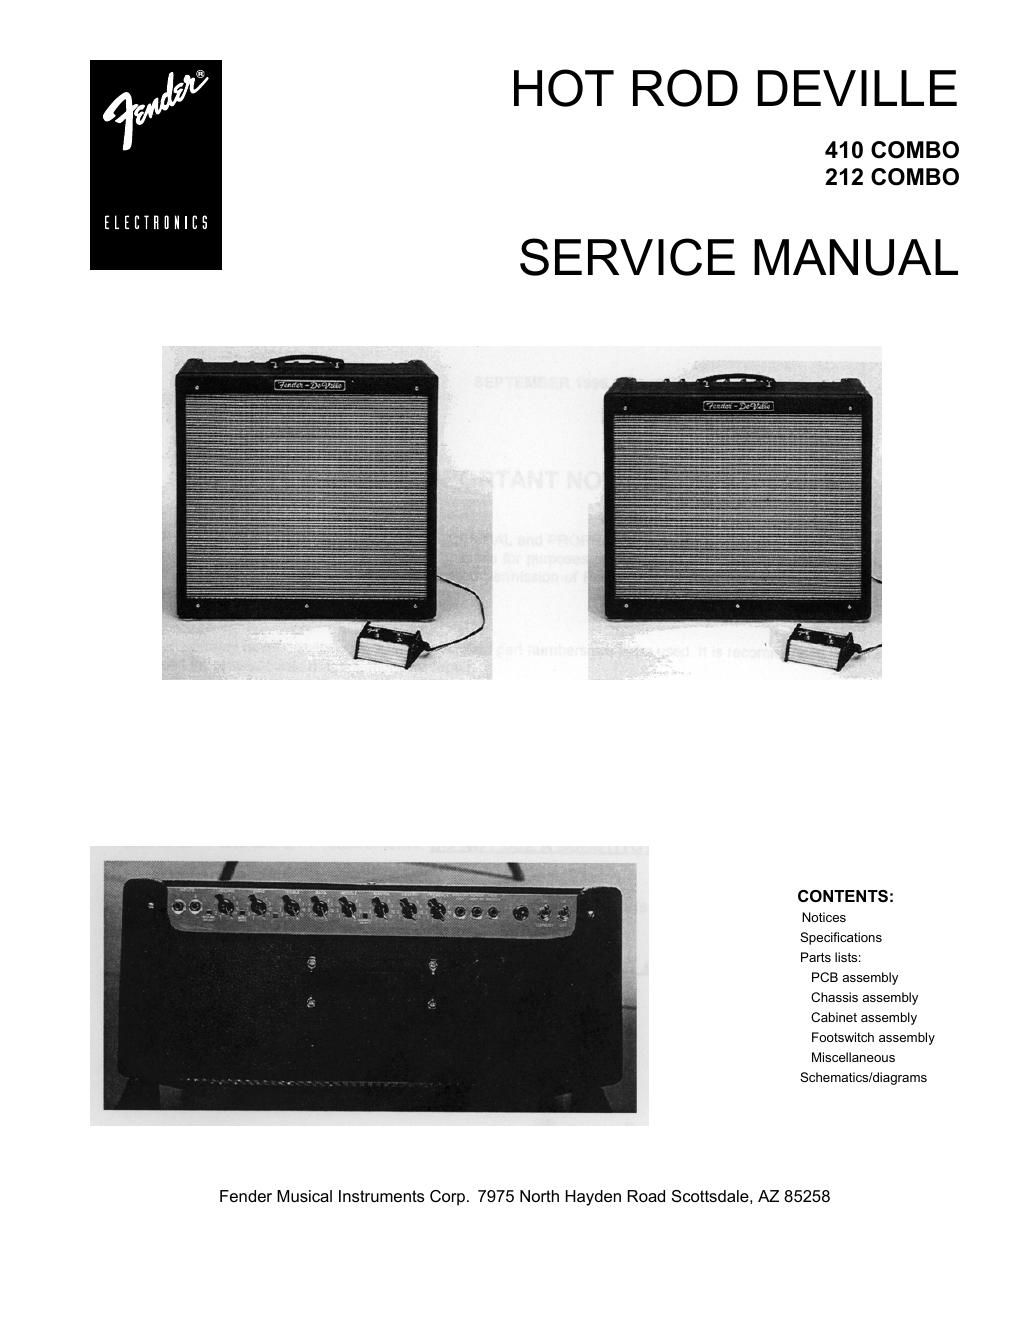 fender hotrod deville service manual